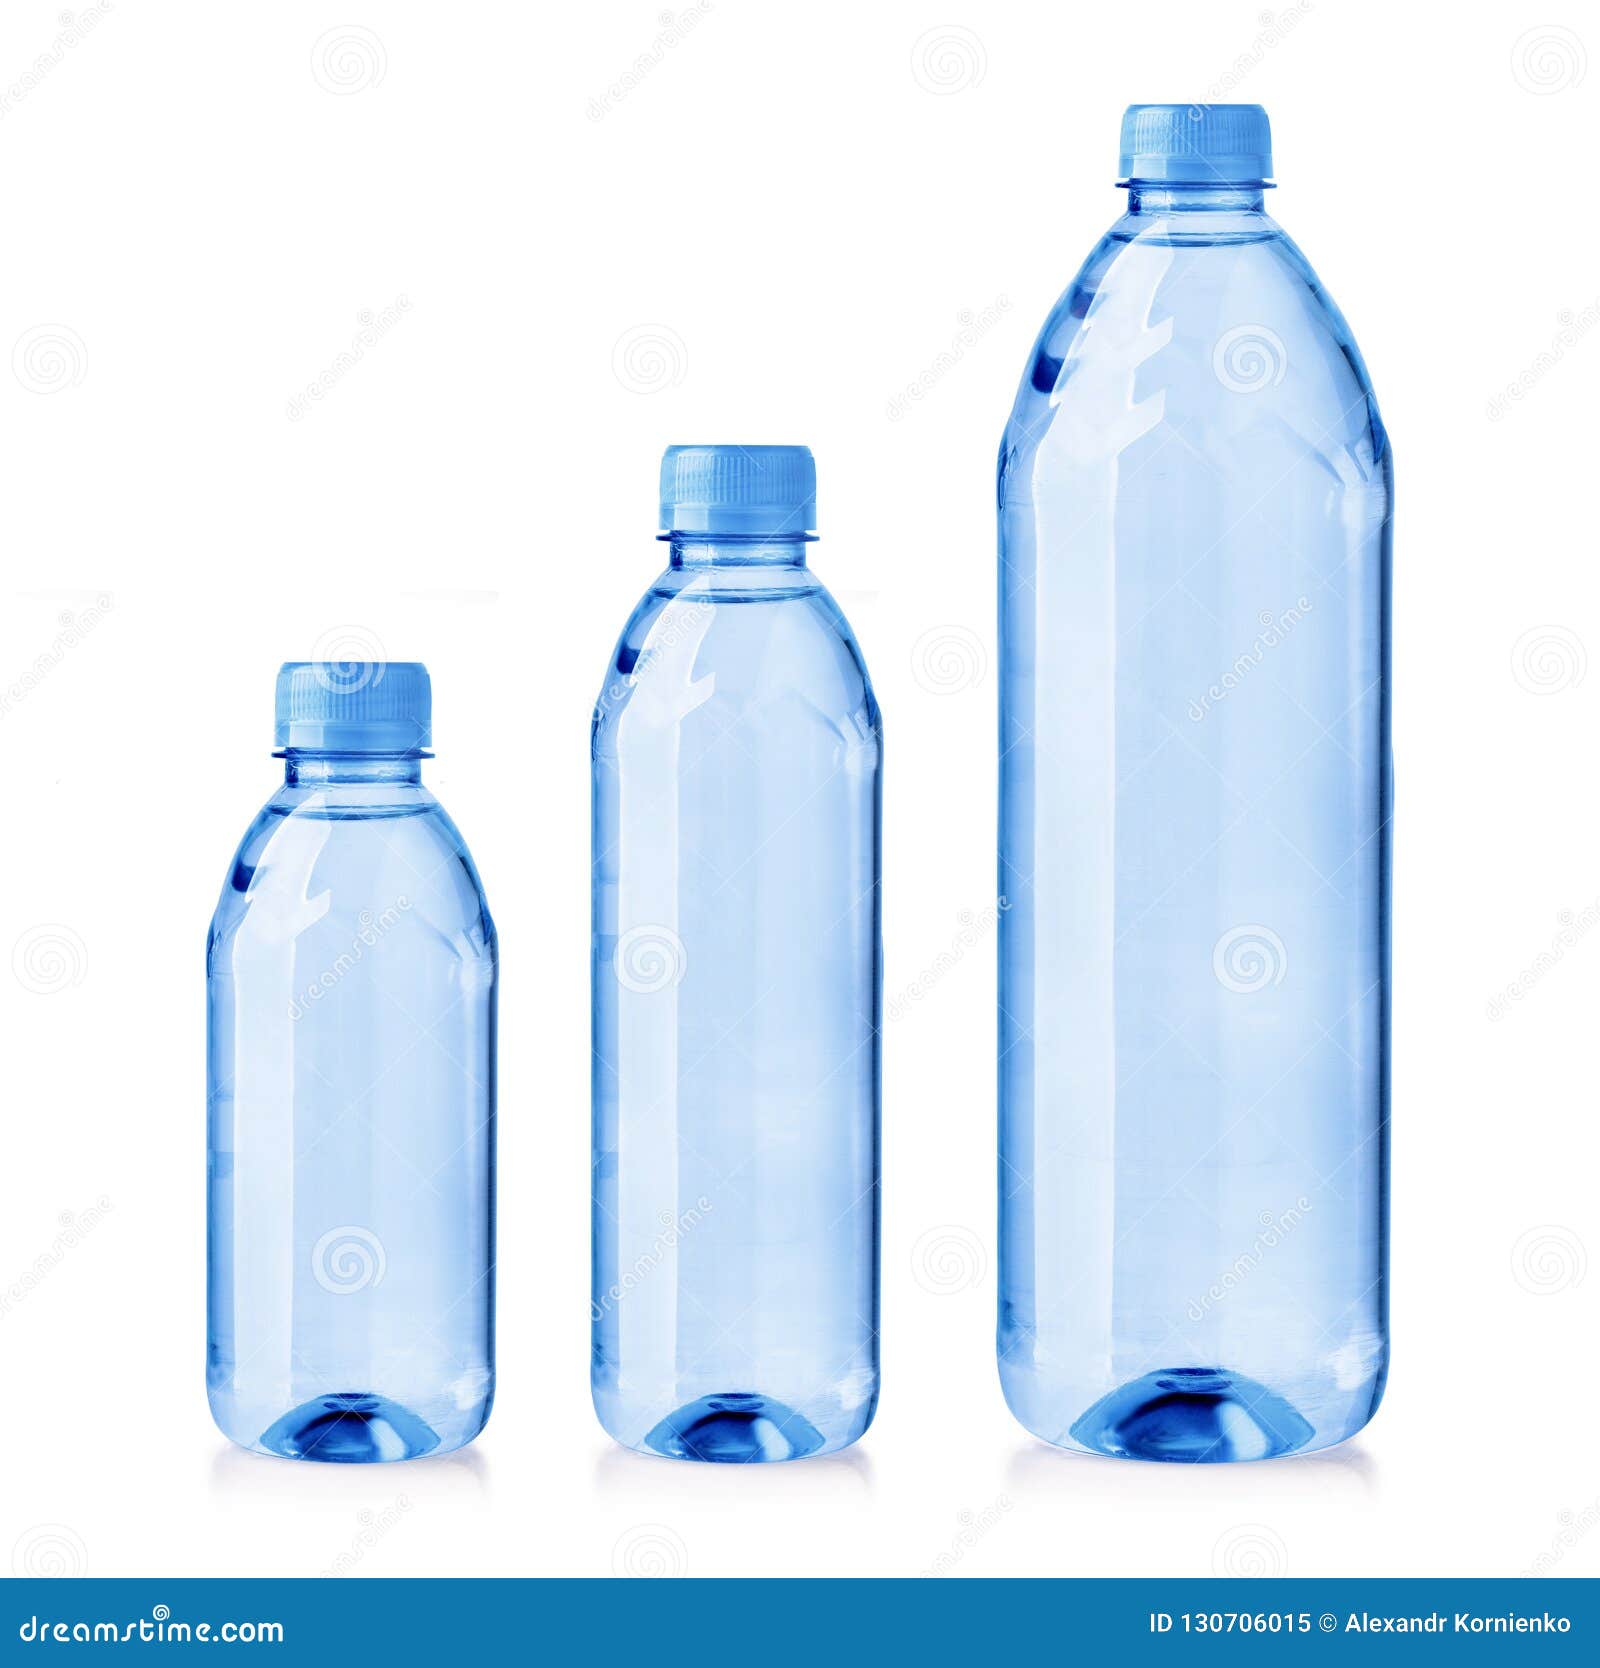 botella de agua limpia y clara vacía aislada sobre un fondo blanco 9051773  Foto de stock en Vecteezy